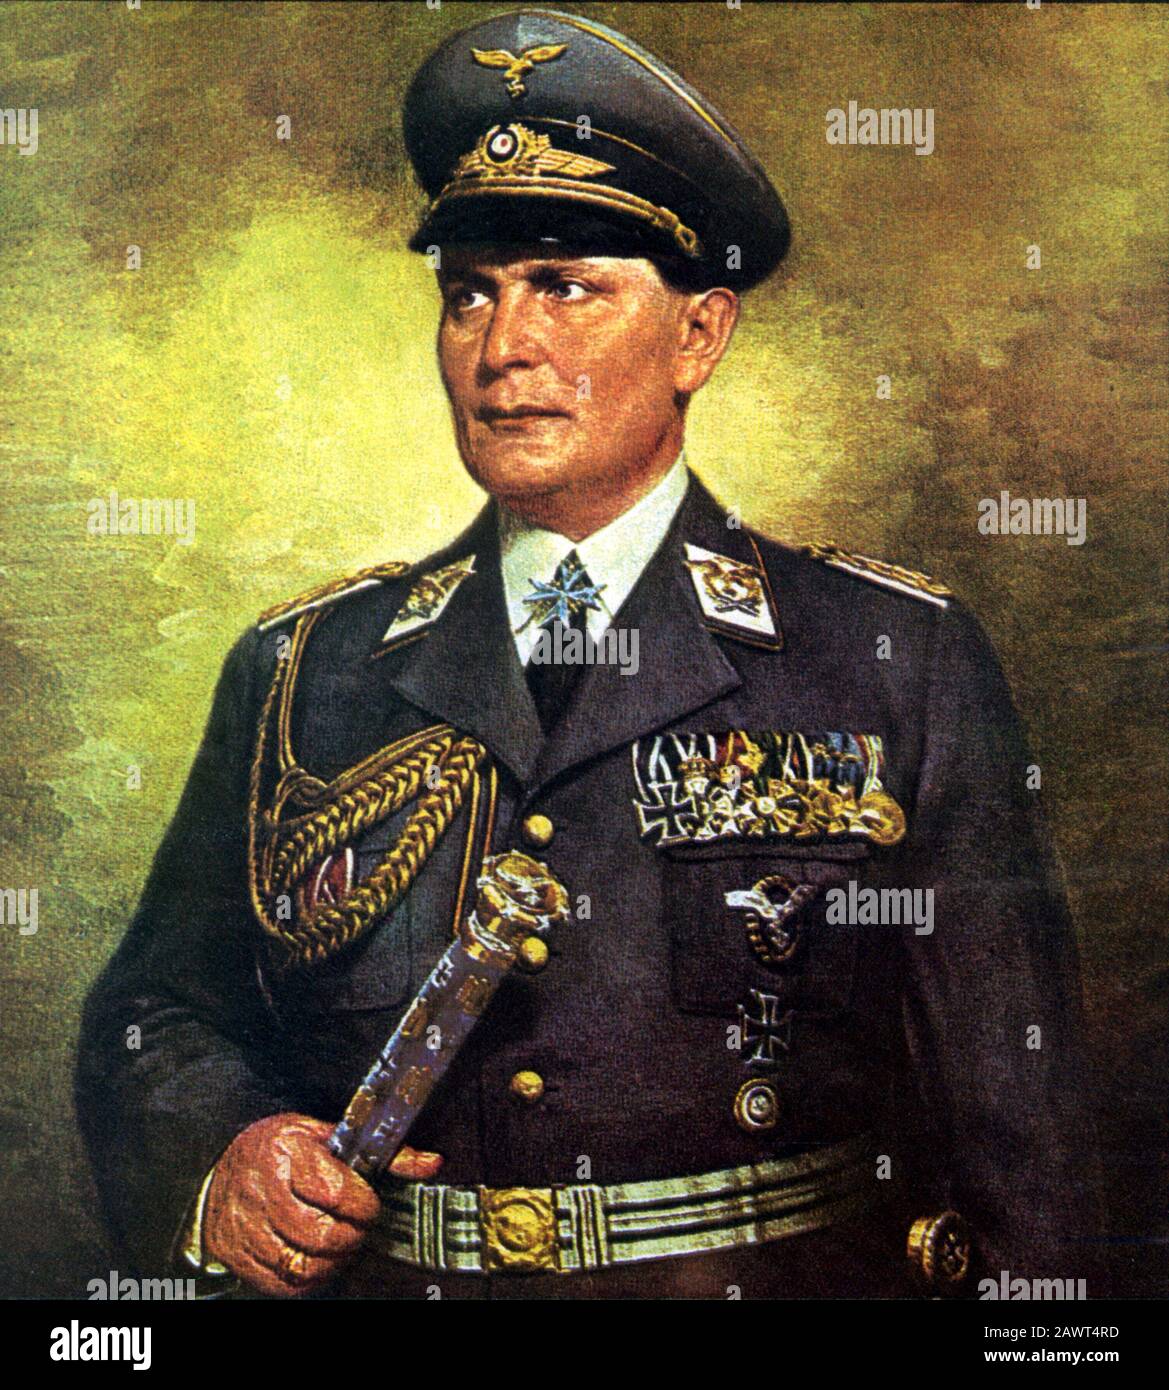 Le champ allemand Marchanl HERMANN GOERING ( 1893 - 1946 ) , comandant de Luftwaffe - NAZI - NAZISME - NAZIST - NAZISTA - NAZISMO - Seconde Guerre mondiale - deuxia guer Banque D'Images